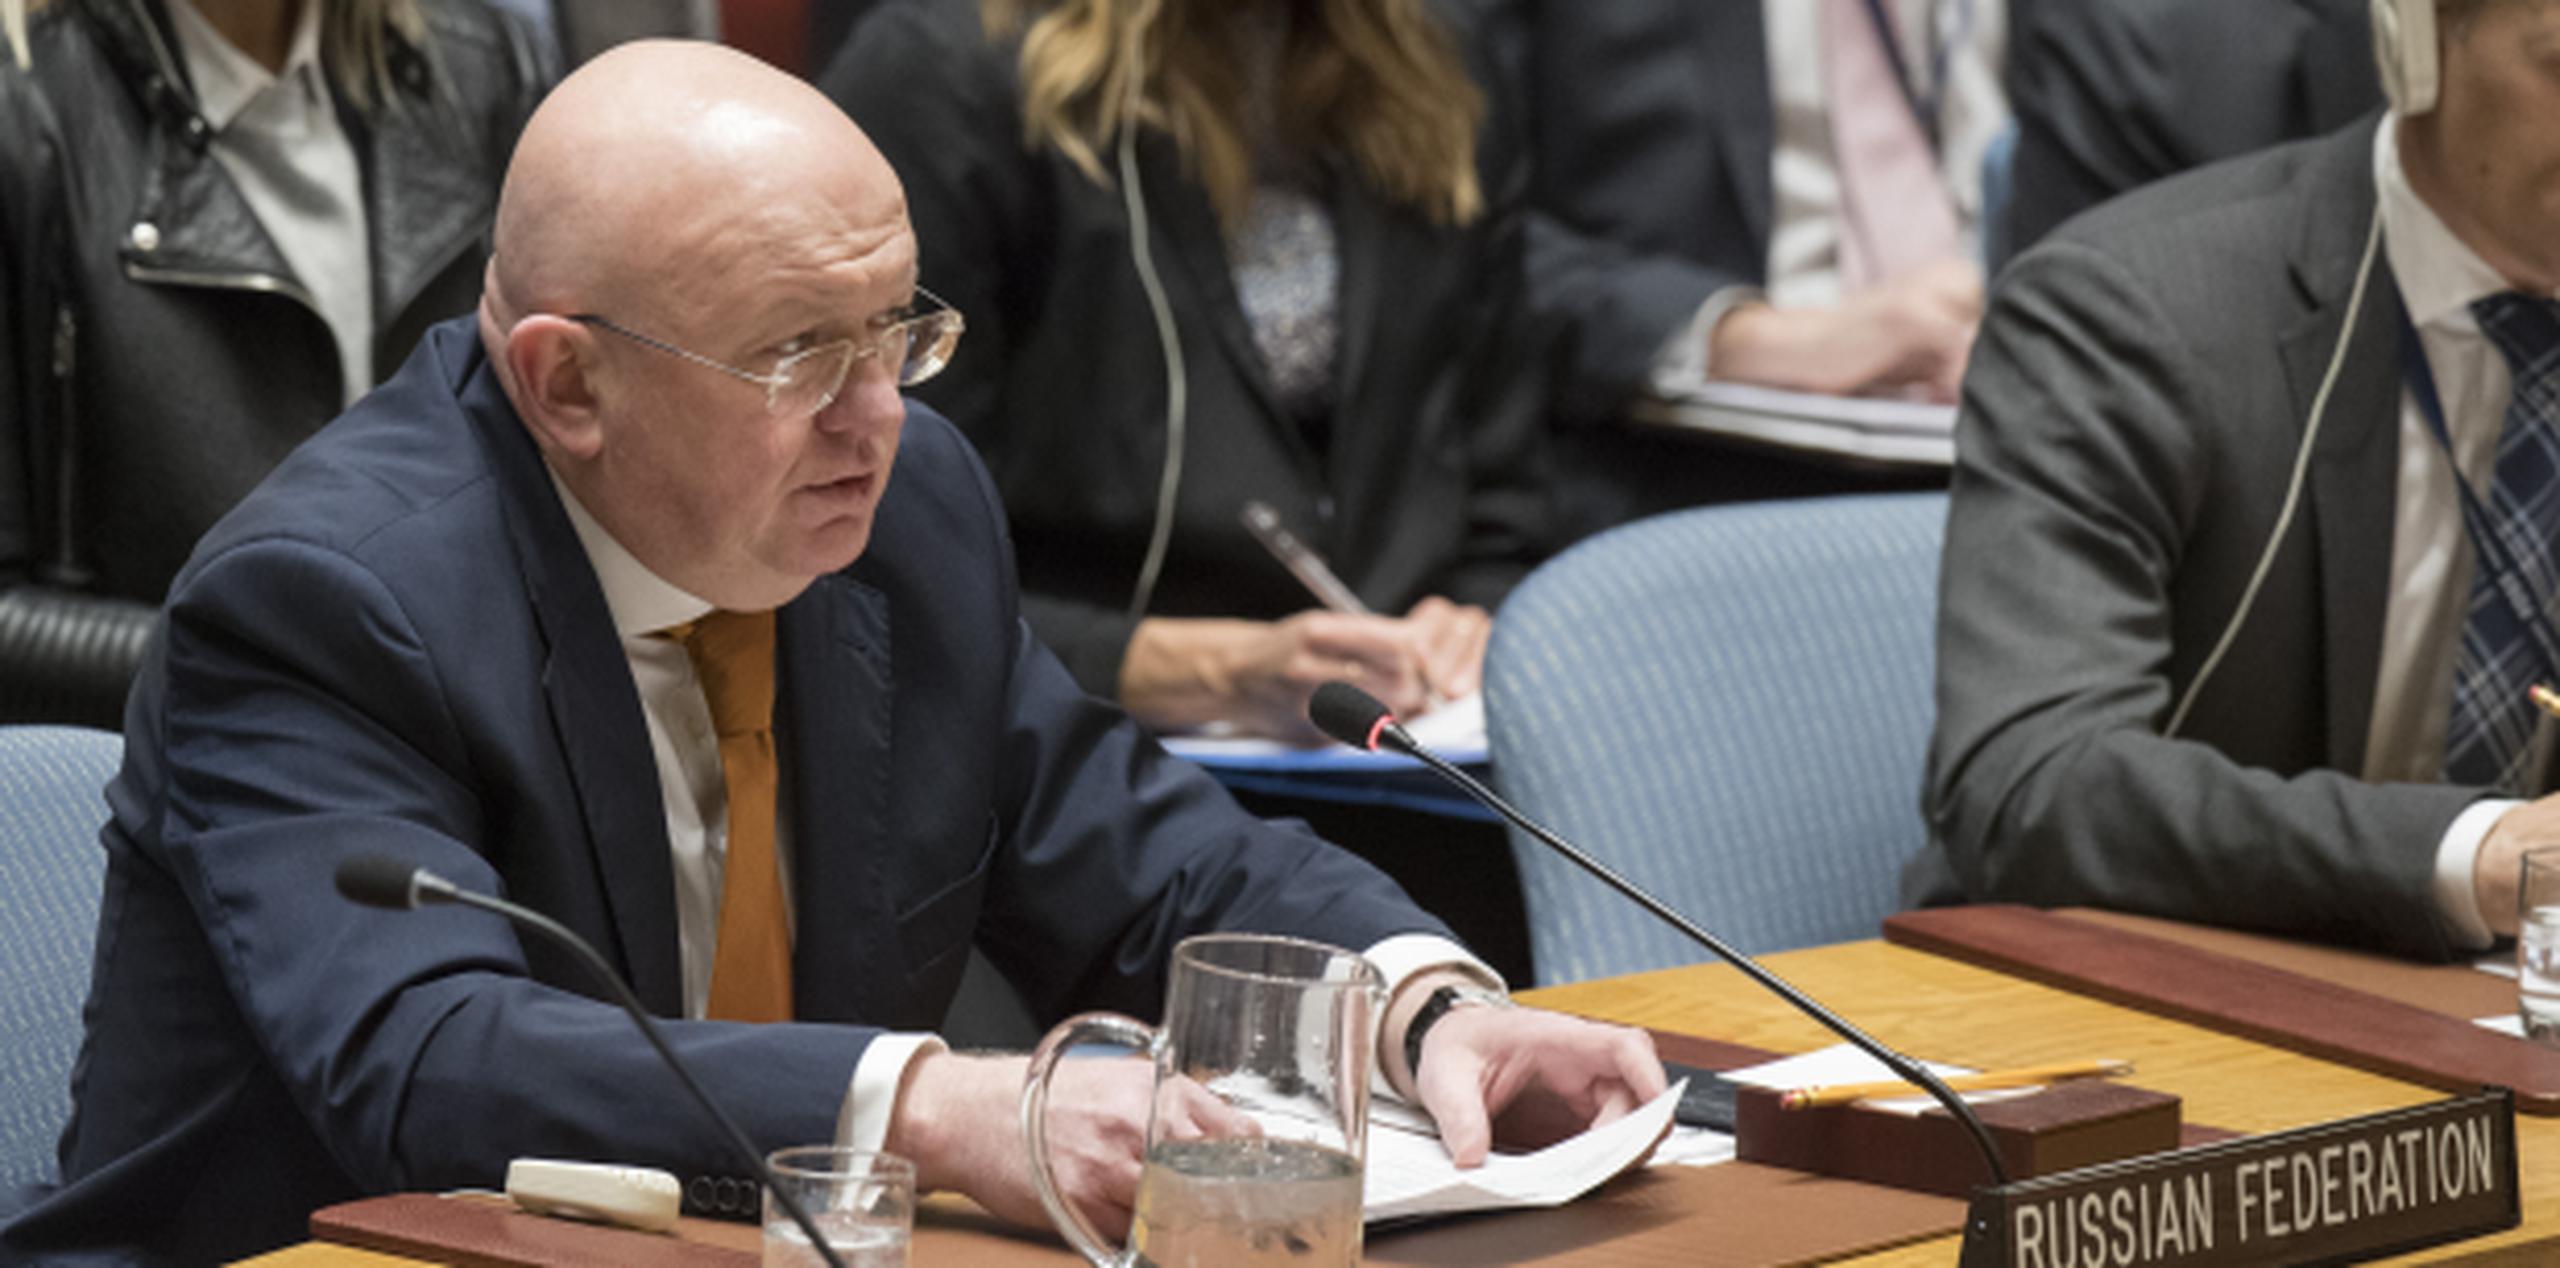 "La situación es muy peligrosa y lo hemos dejado muy claro", dijo Vasili Nebenzia al término de una reunión a puerta cerrada del Consejo de Seguridad de la ONU. (AP)

